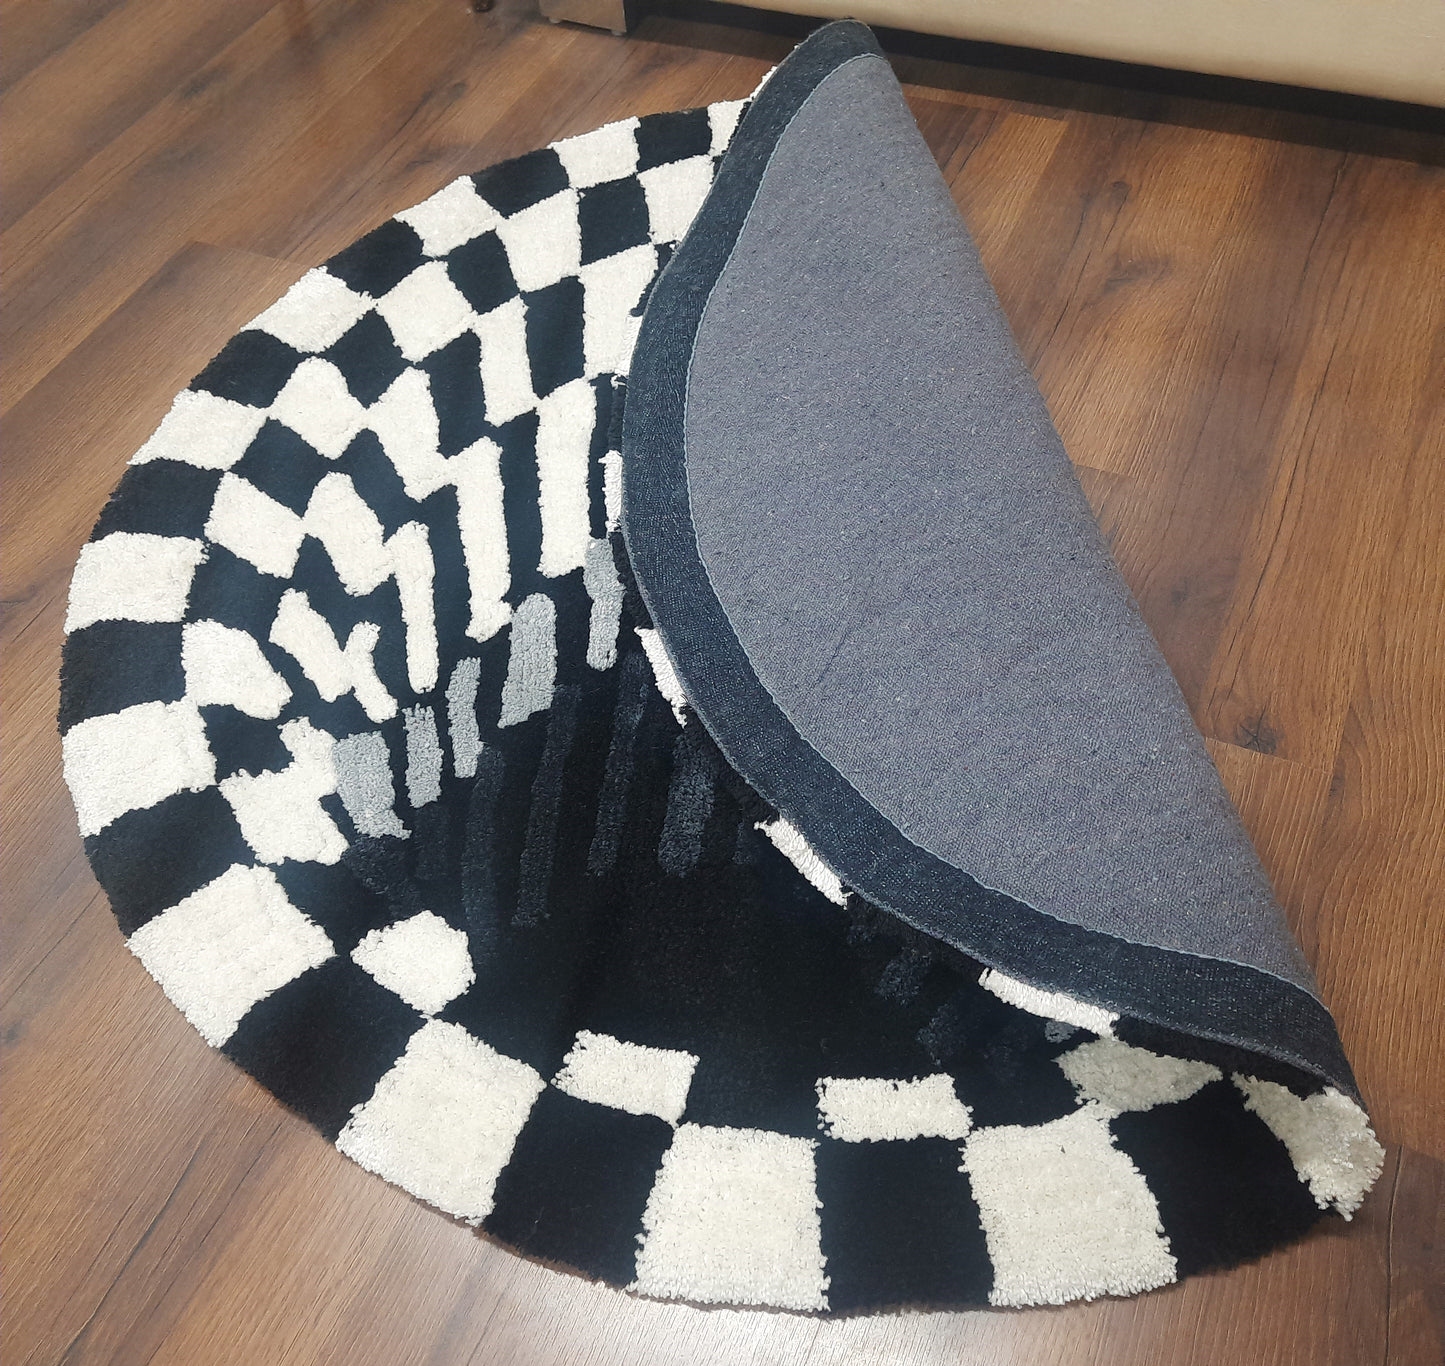 Avioni Home Vortex 3D Illusion Soft Plush Micro Yarn Round Carpet In Black & White| Soft, Non-Slip, Easy to Clean